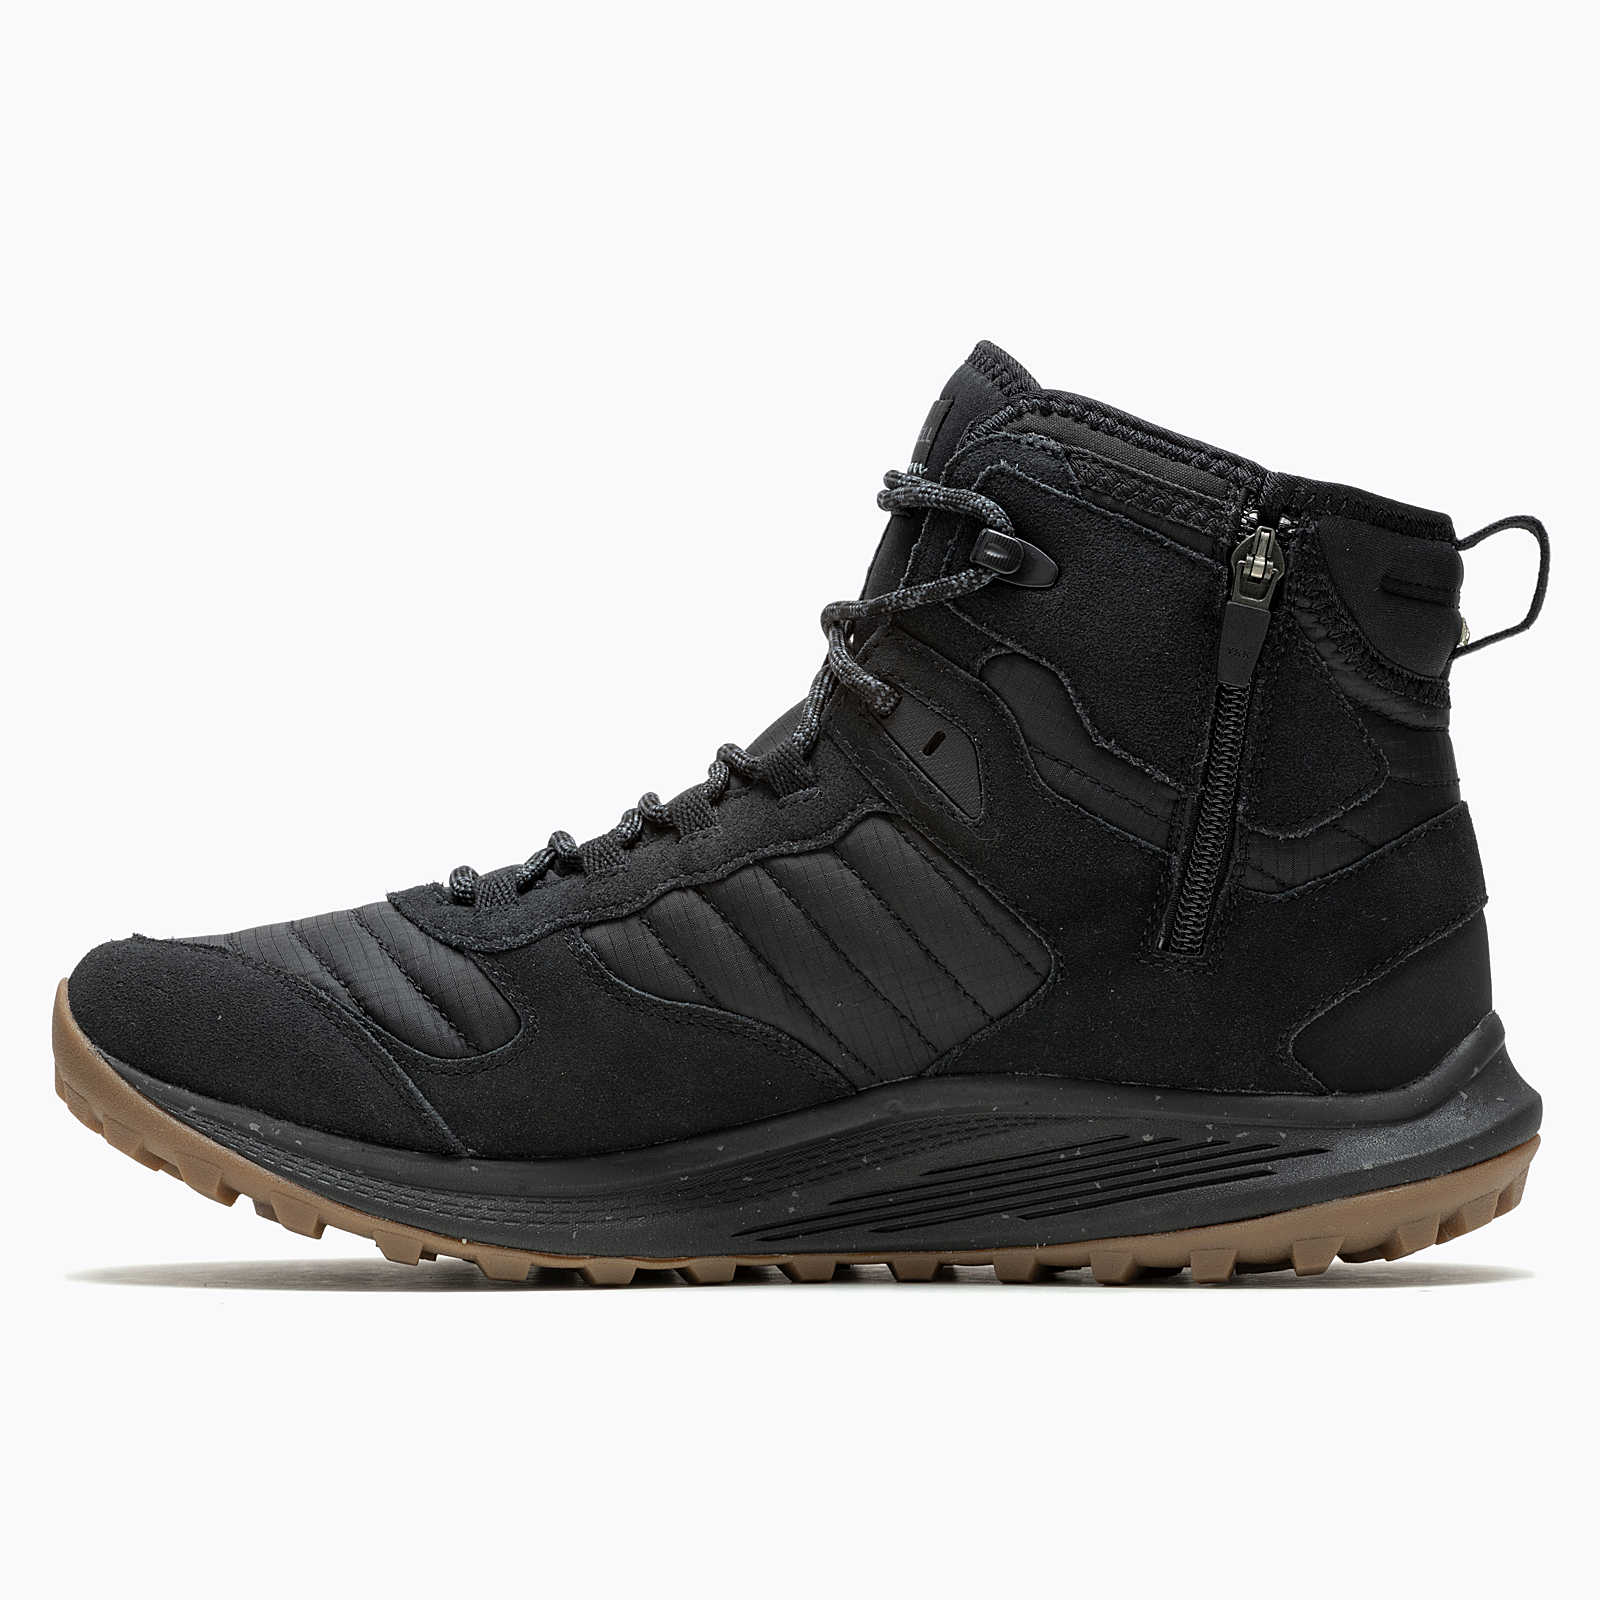 Merrell Men's Nova 3 Thermo Mid Zip Waterproof Boots Black